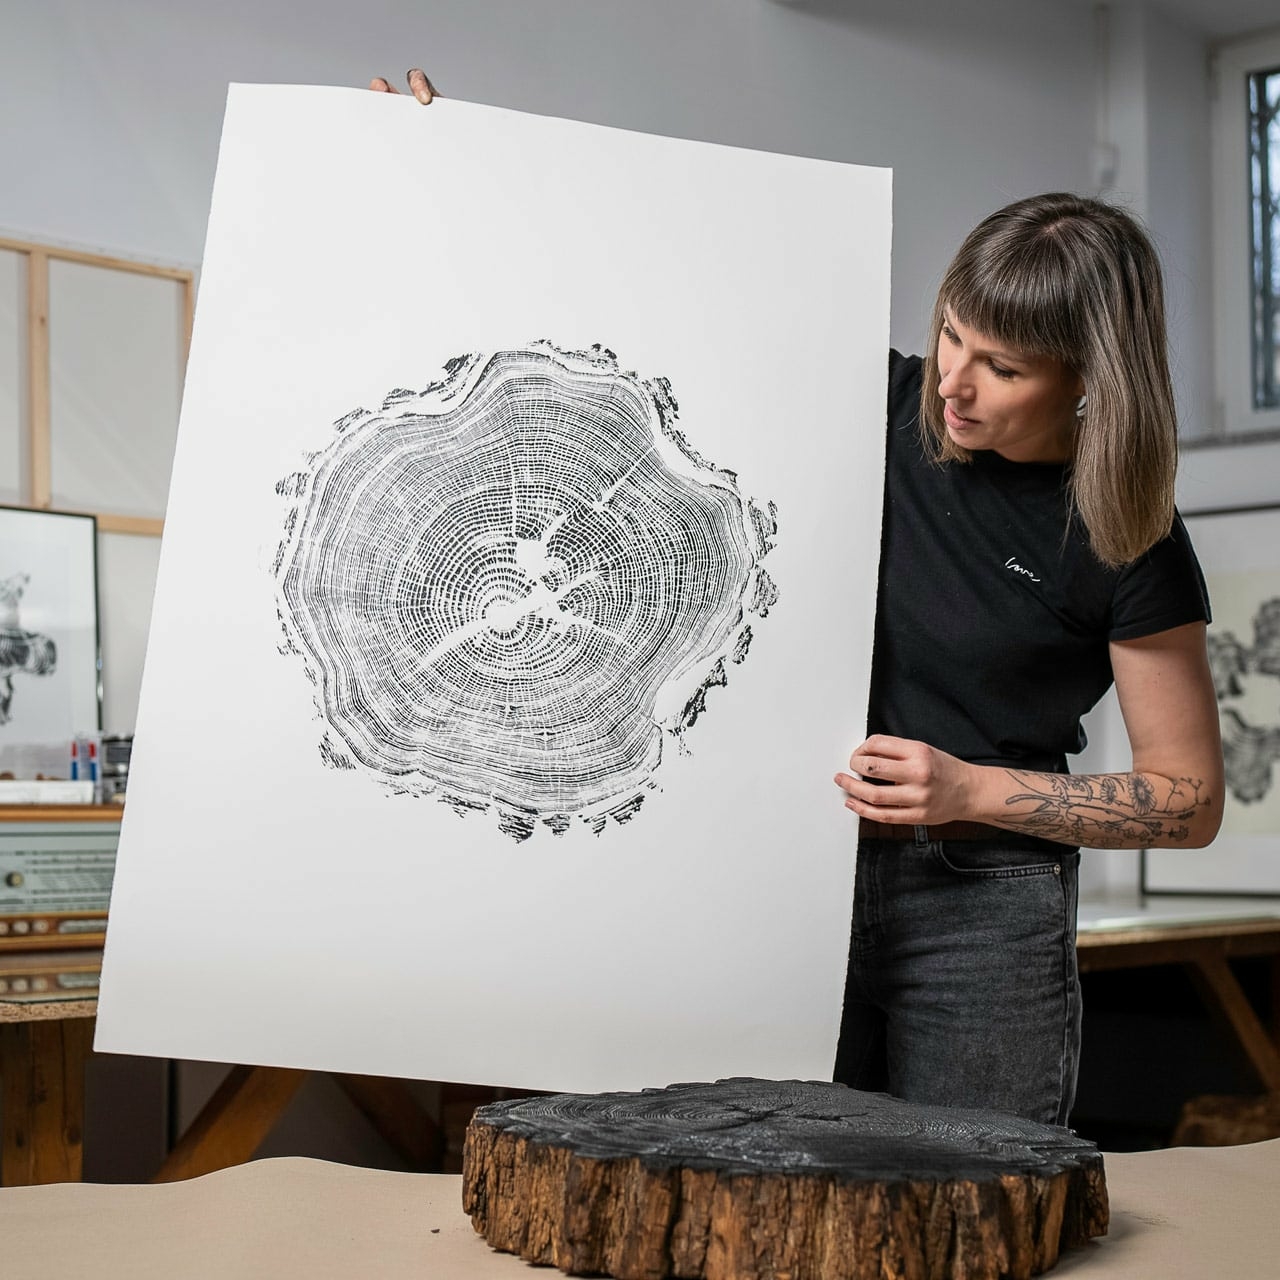 Marta Kozłowska w swojej pracowni prezentuje gotowy obraz - odcisk pnia drzewa